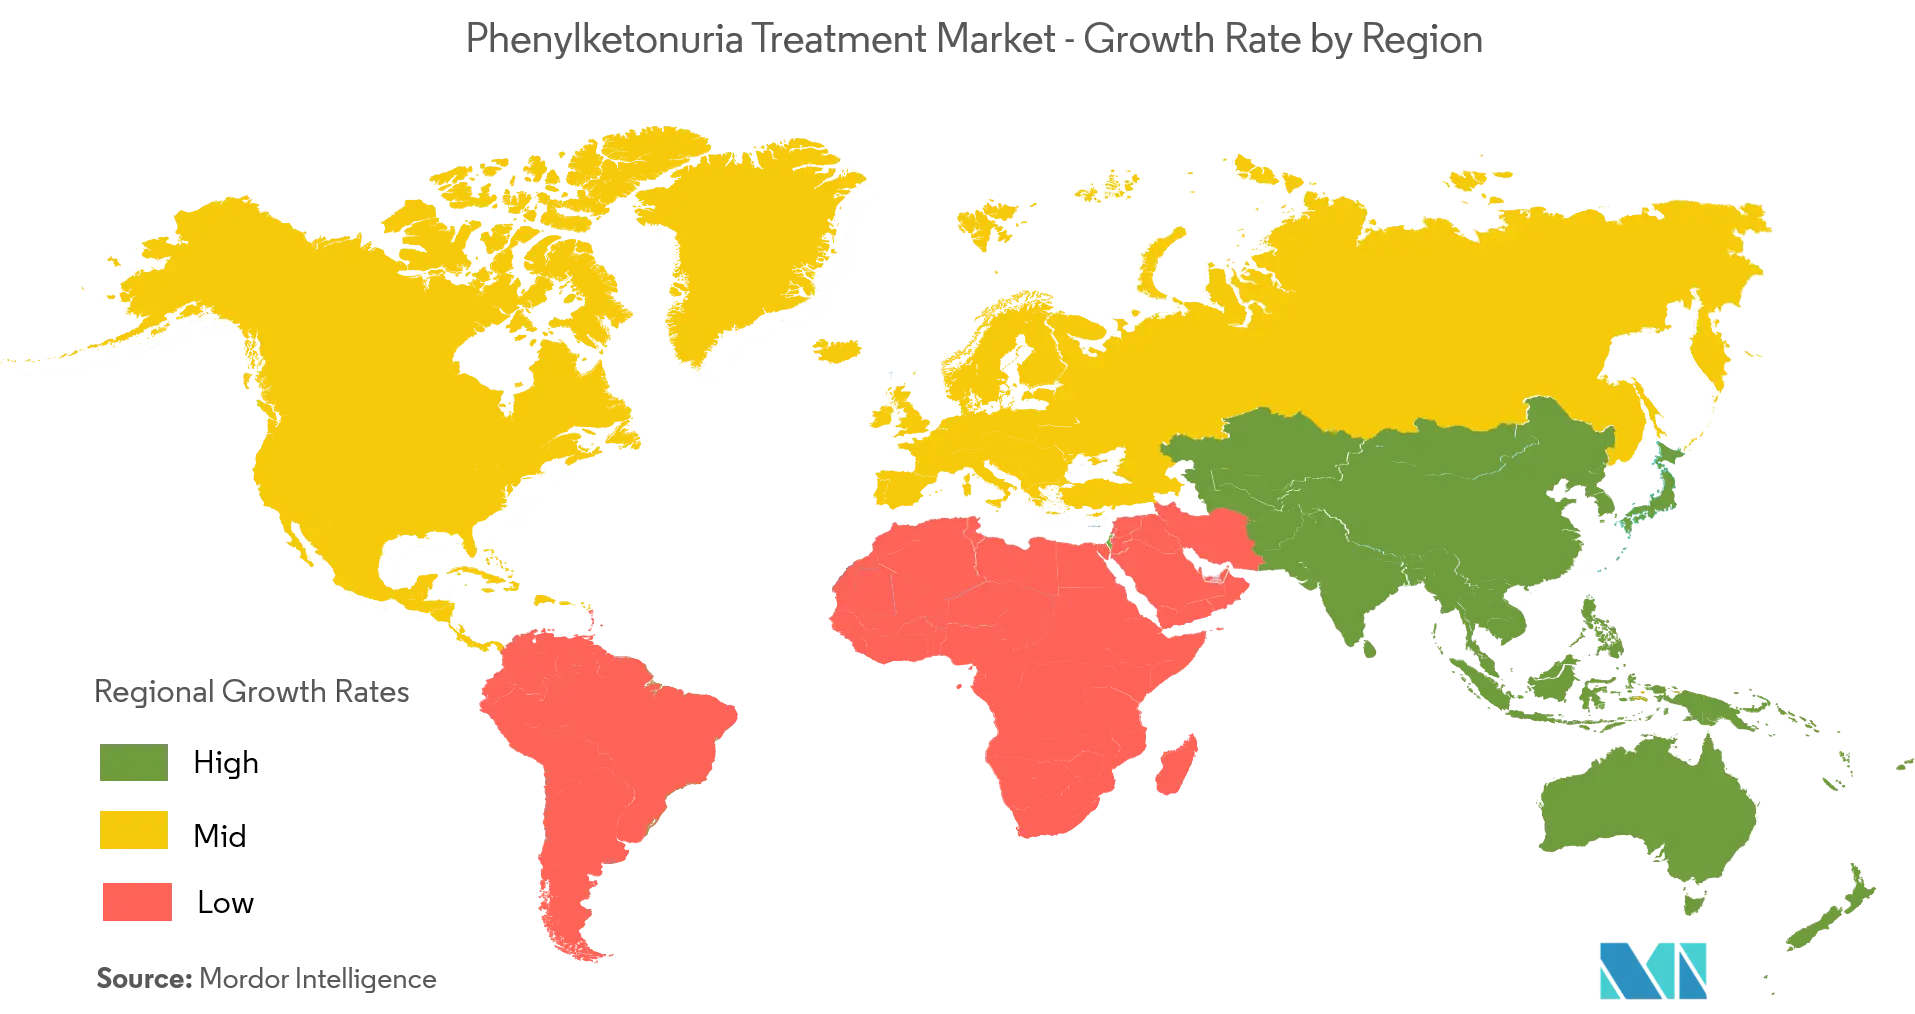 Phenylketonuria Treatment Market Analysis